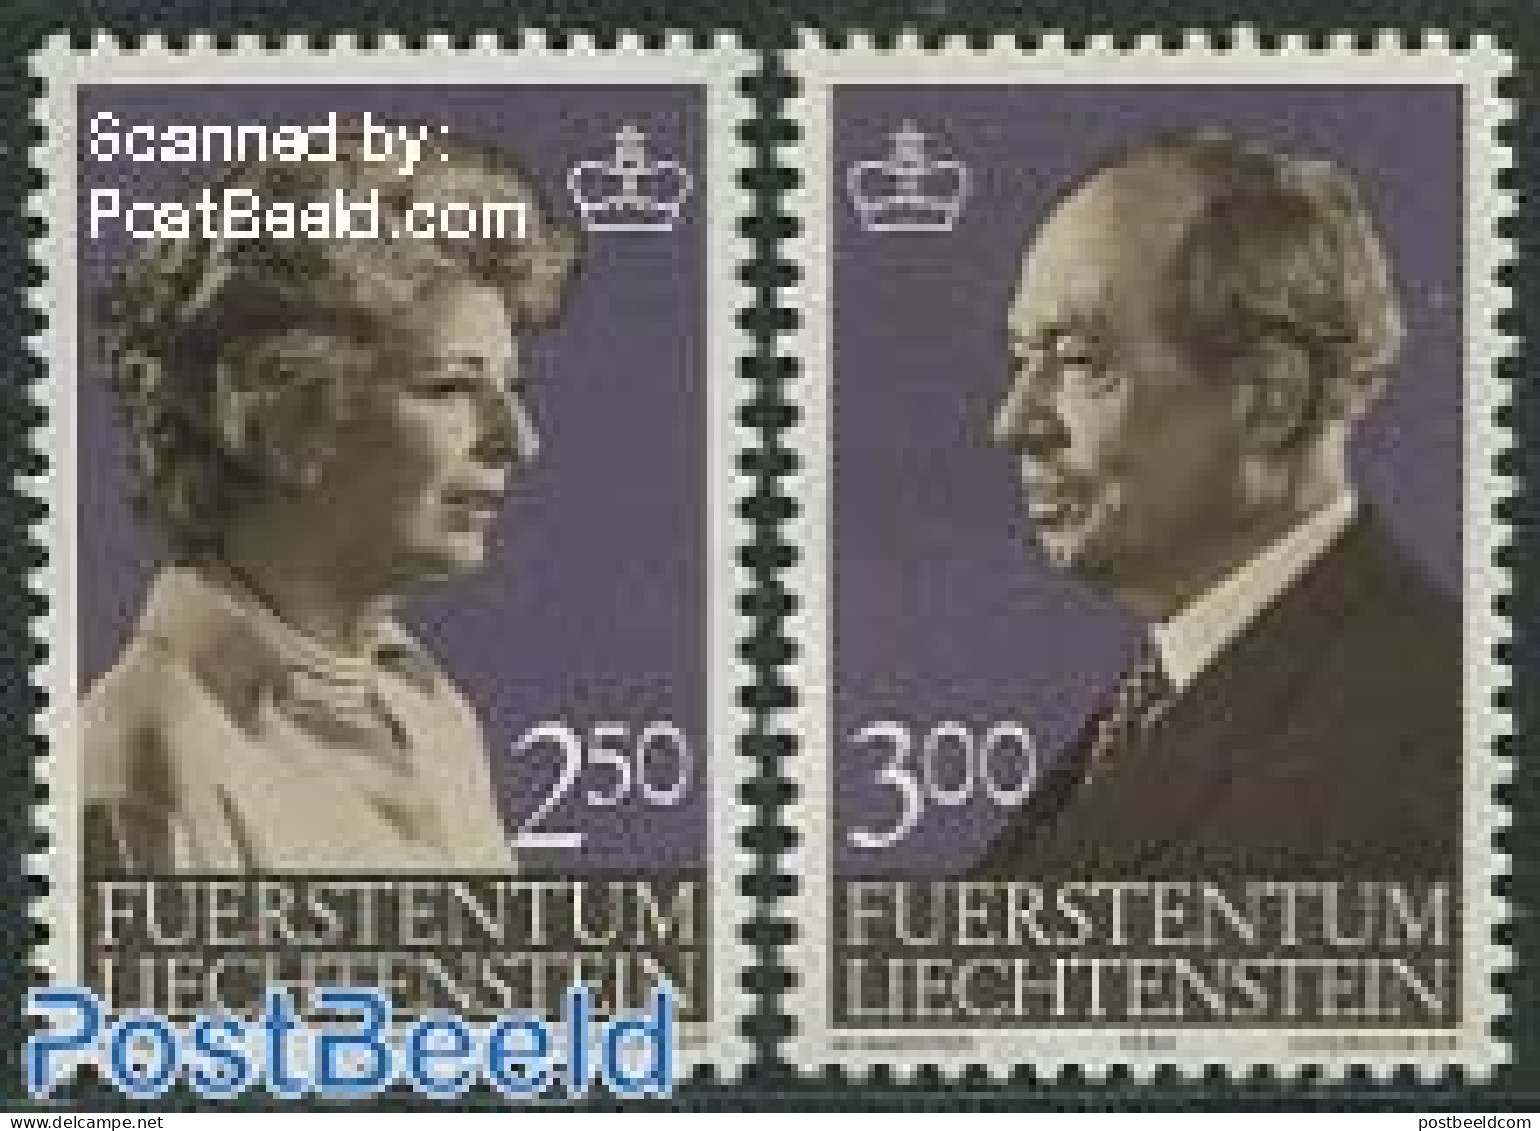 Liechtenstein 1983 Definitives 2v, Mint NH, History - Kings & Queens (Royalty) - Ongebruikt